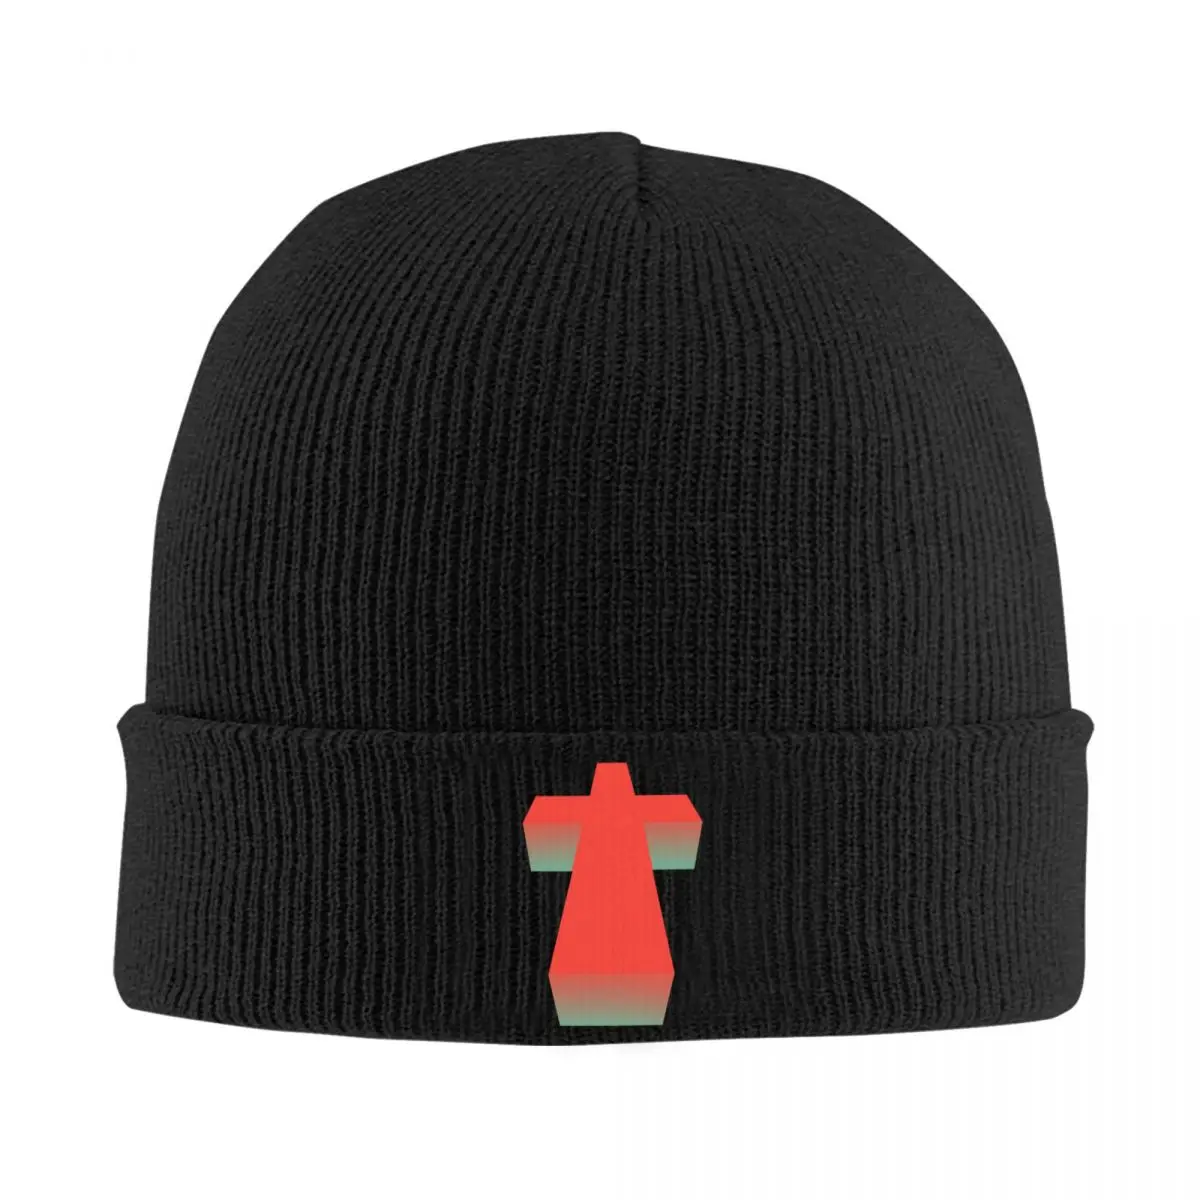 

Винтажная облегающая шапка с крестом для справедливости, зимняя теплая шапка унисекс, мужские вязаные шапки, лыжные шапочки для улицы, облегающие шапки для мужчин и женщин